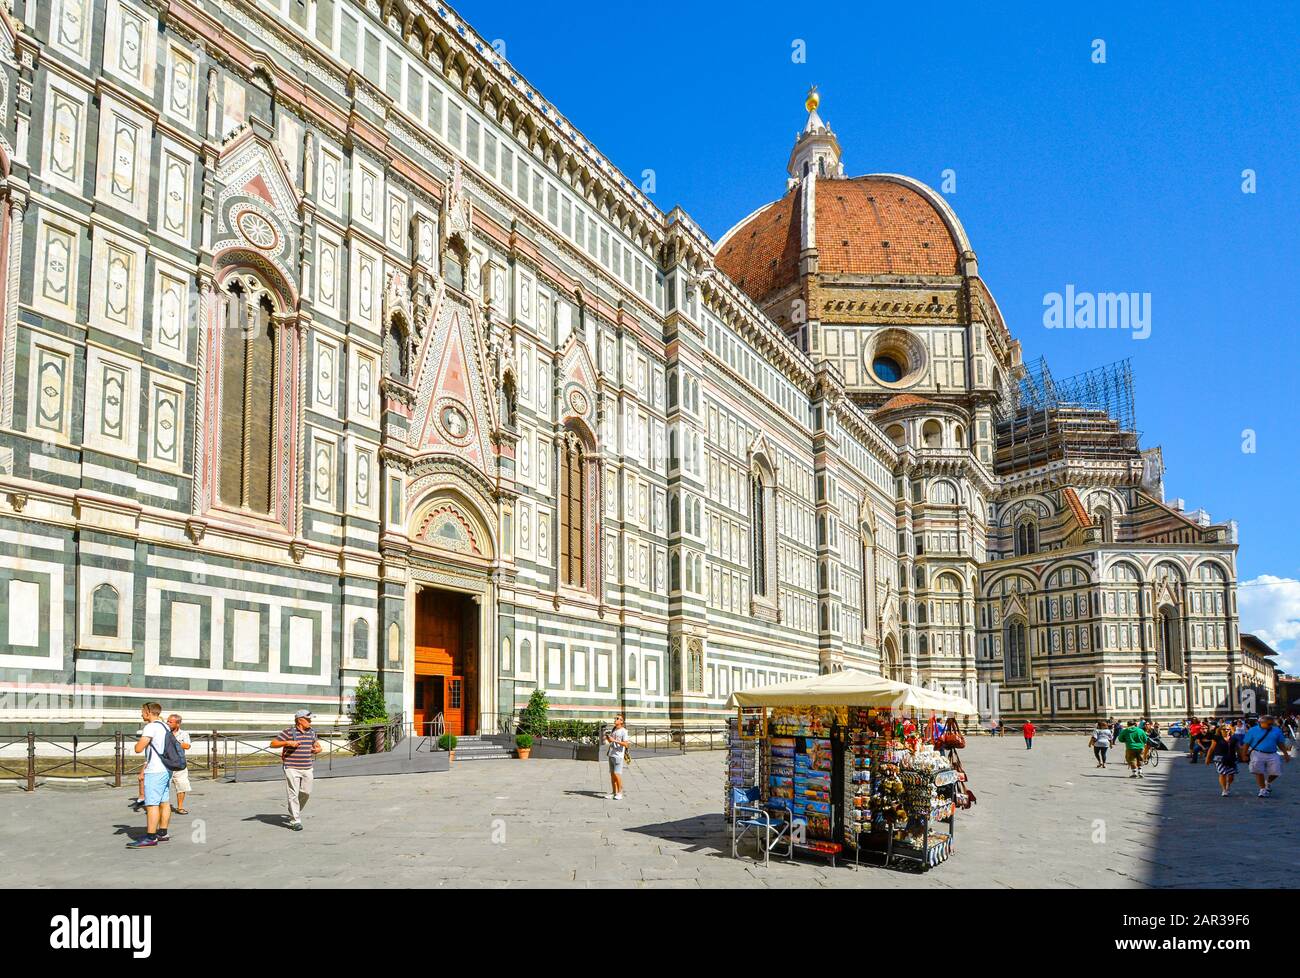 Ein Erinnerungsstand vor der Kathedrale von Florenz oder der Cattedrale di Santa Maria del Fiore auf der Piazza del Duomo in der toskanischen Region von Florenz Italien Stockfoto